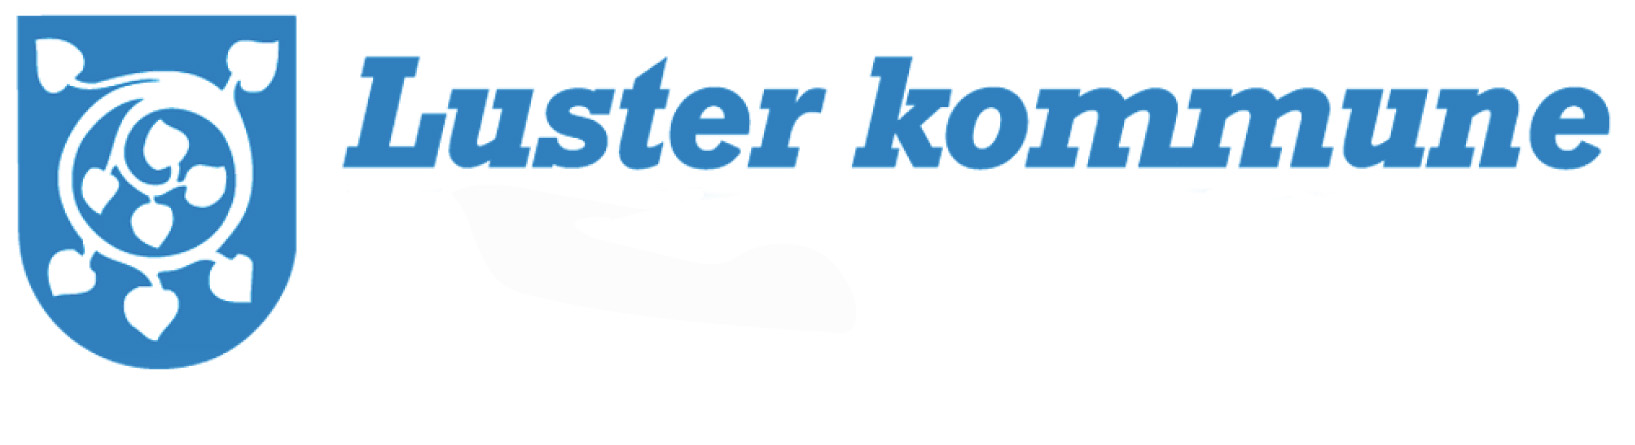 Logo Luster kommune m namn copy.jpg